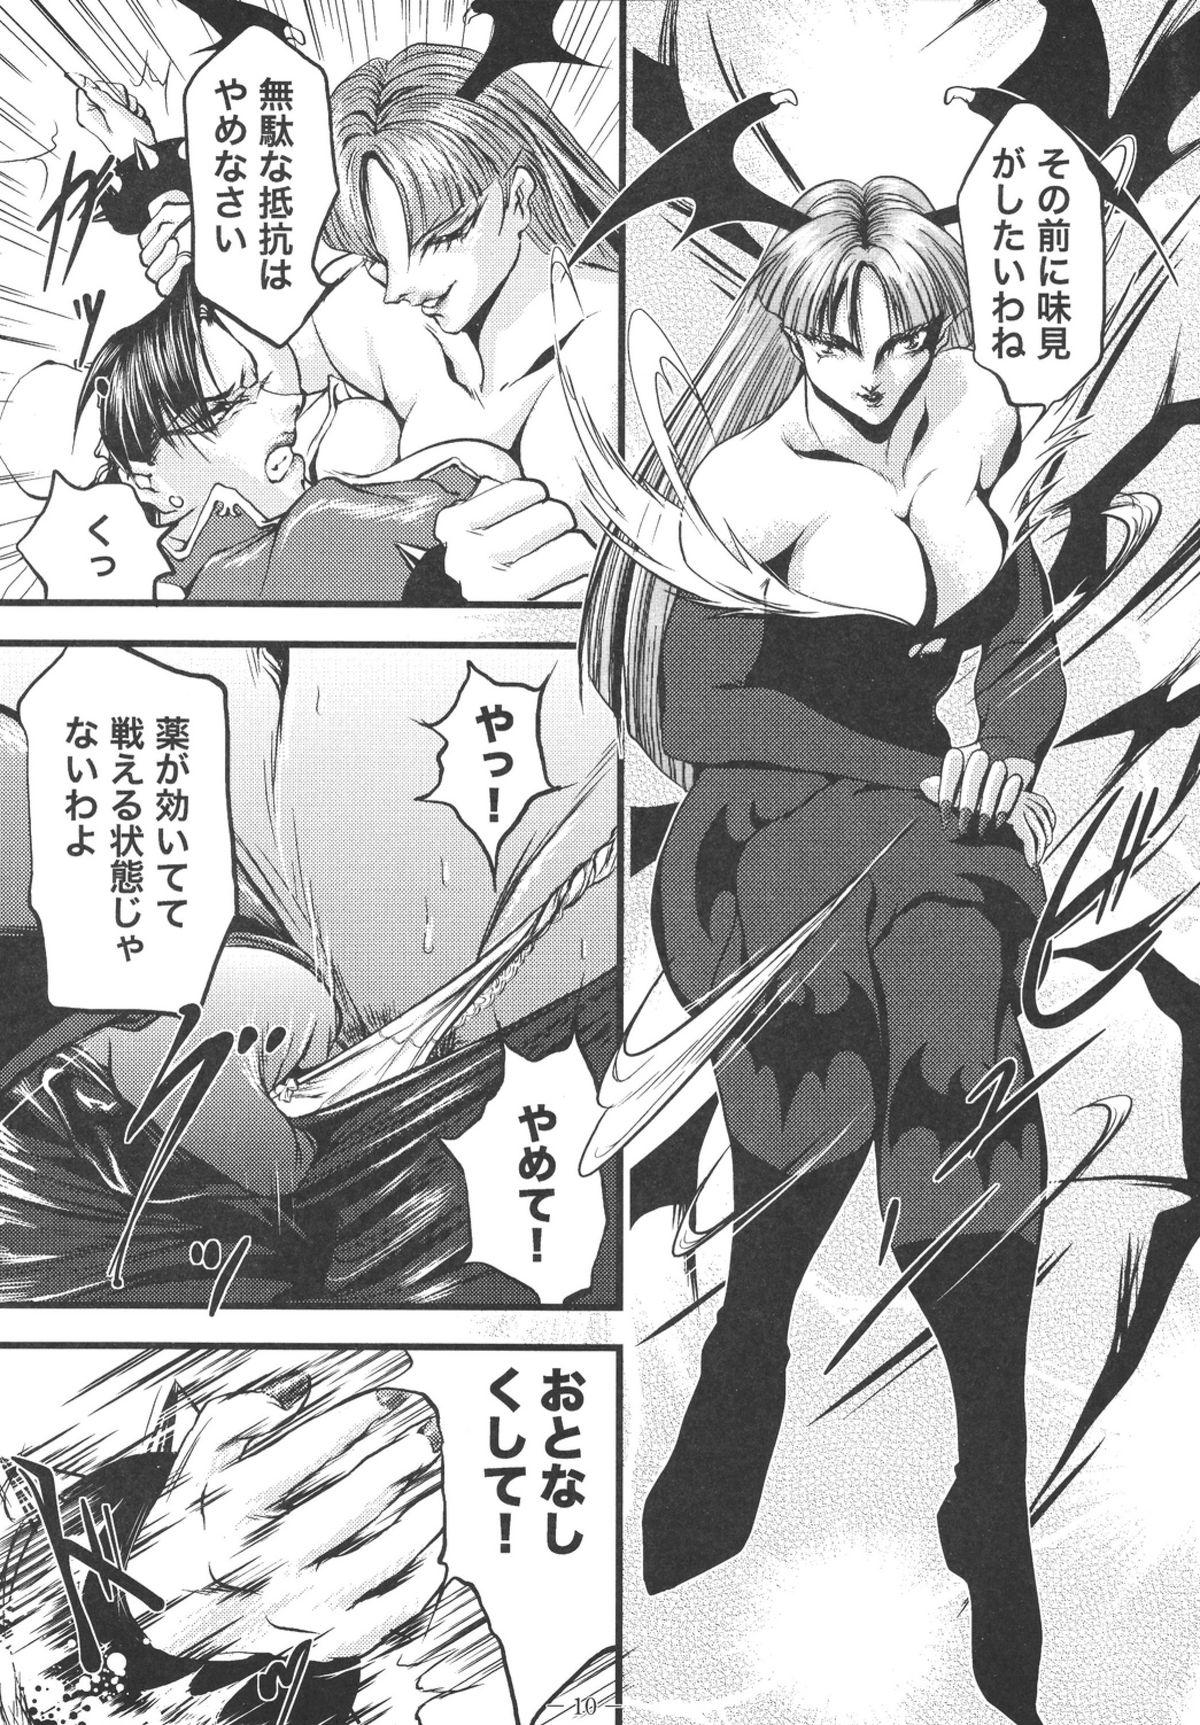 Cocksuckers Ingoku no Ikusa Megami Battle Queen - Street fighter Darkstalkers Gozando - Page 10